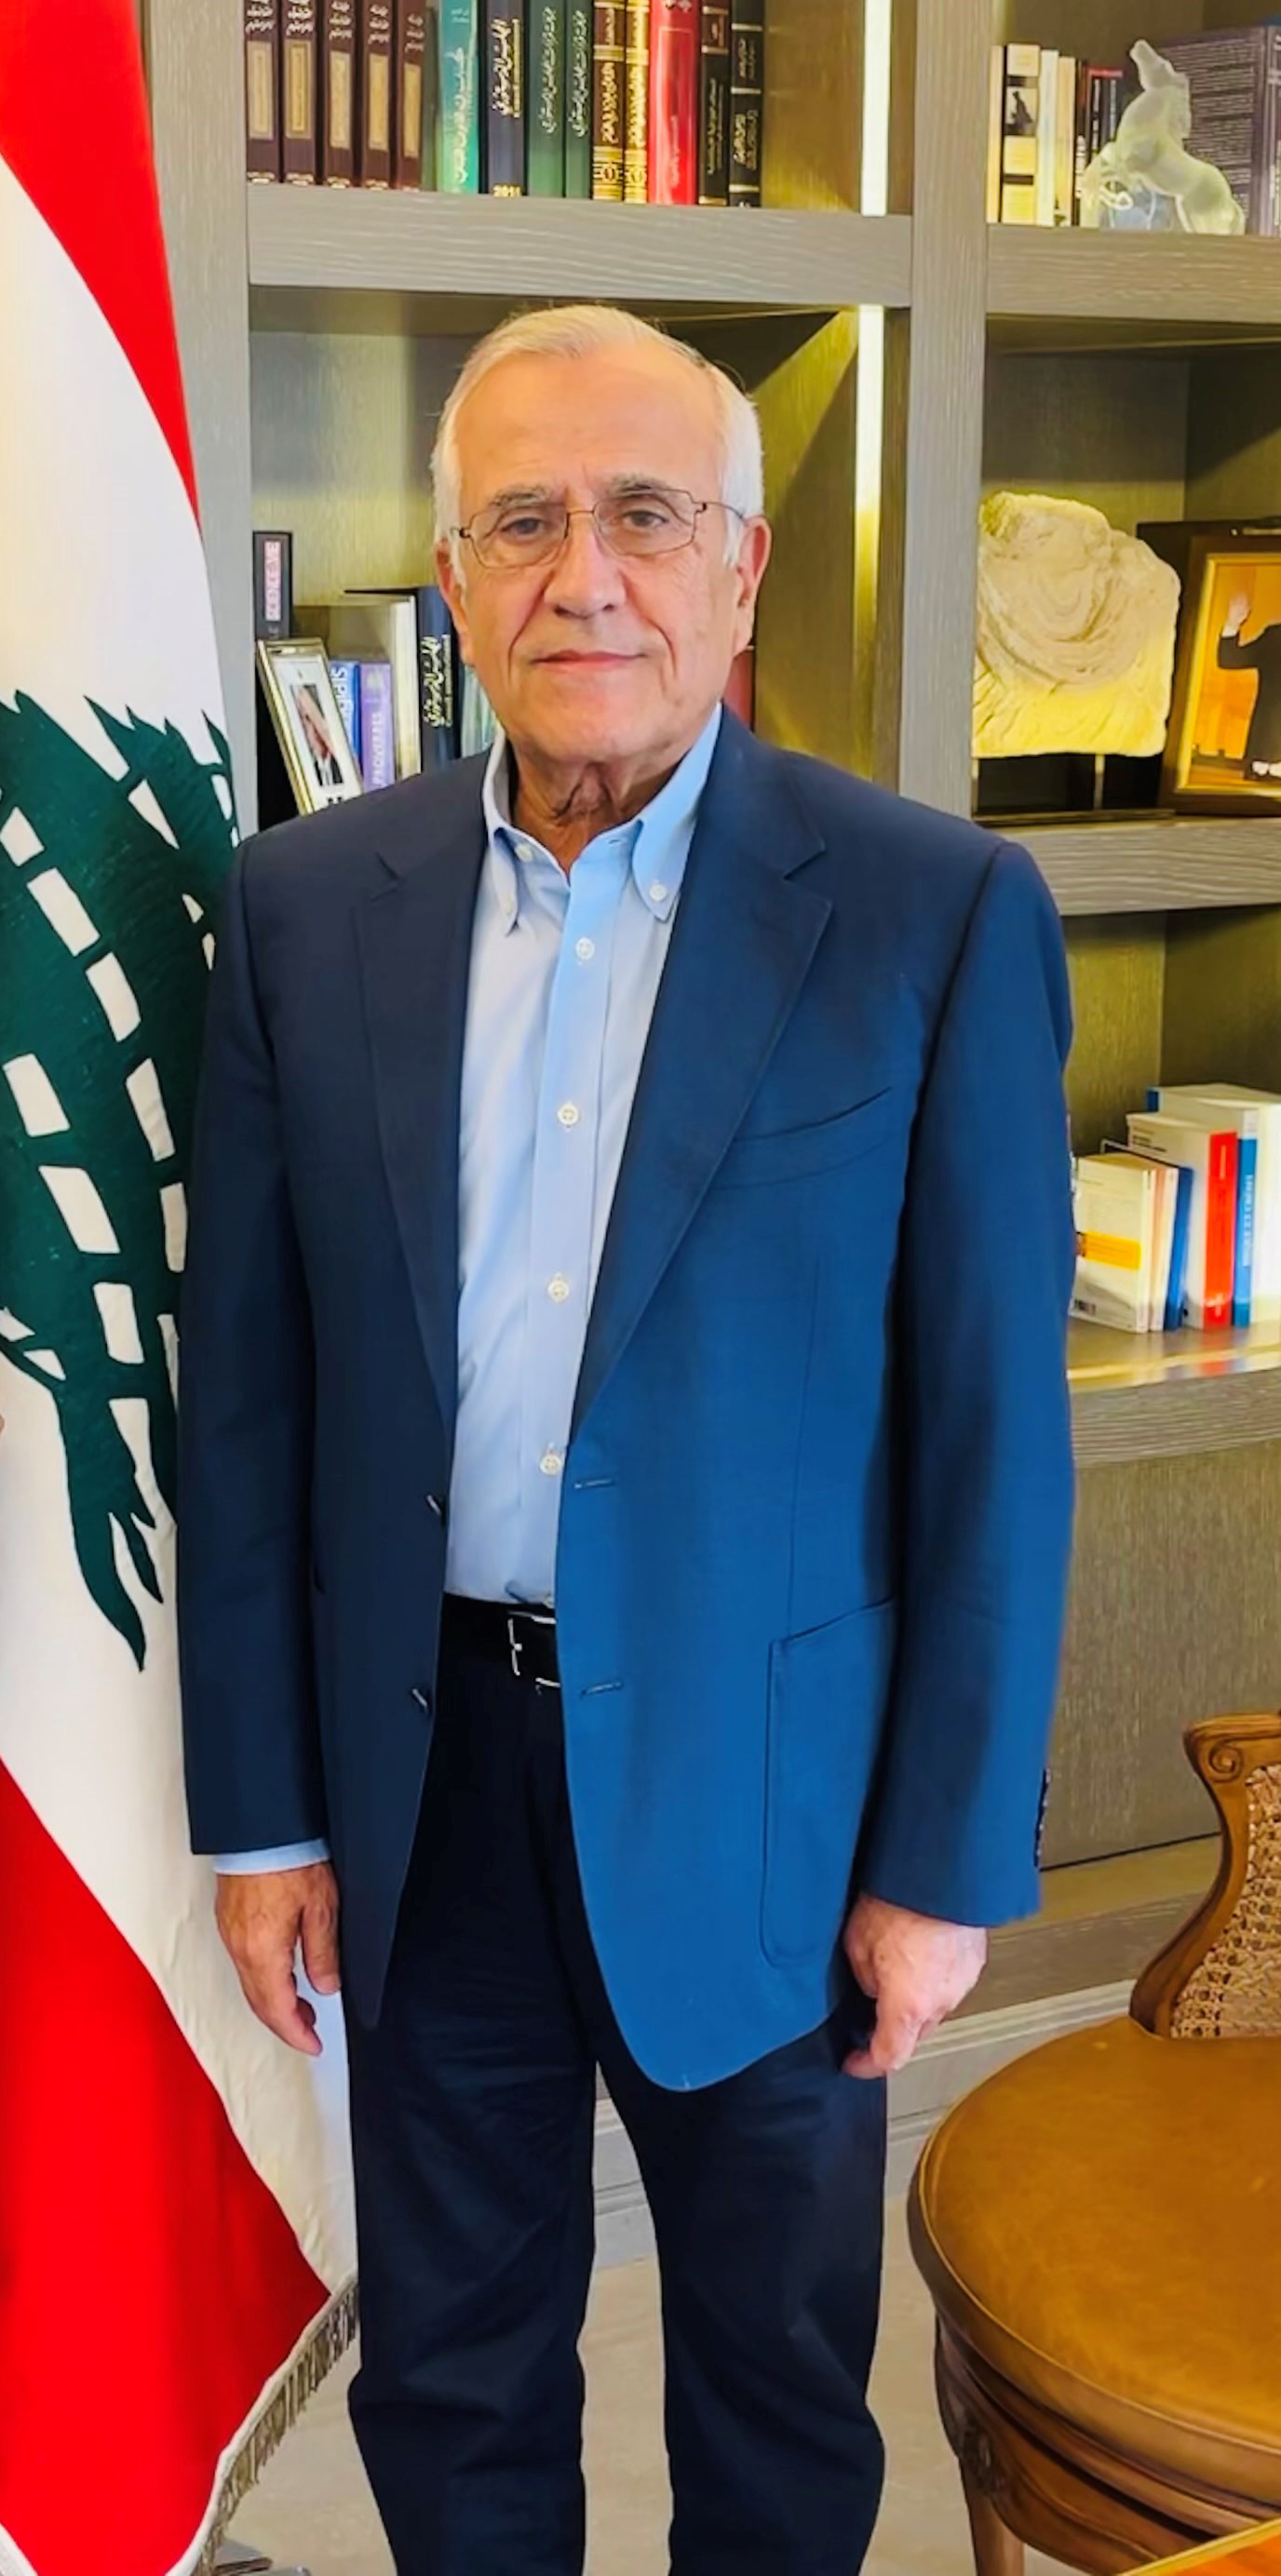 La clave para la estabilidad del Líbano es la neutralidad, dice el ex presidente Suleiman